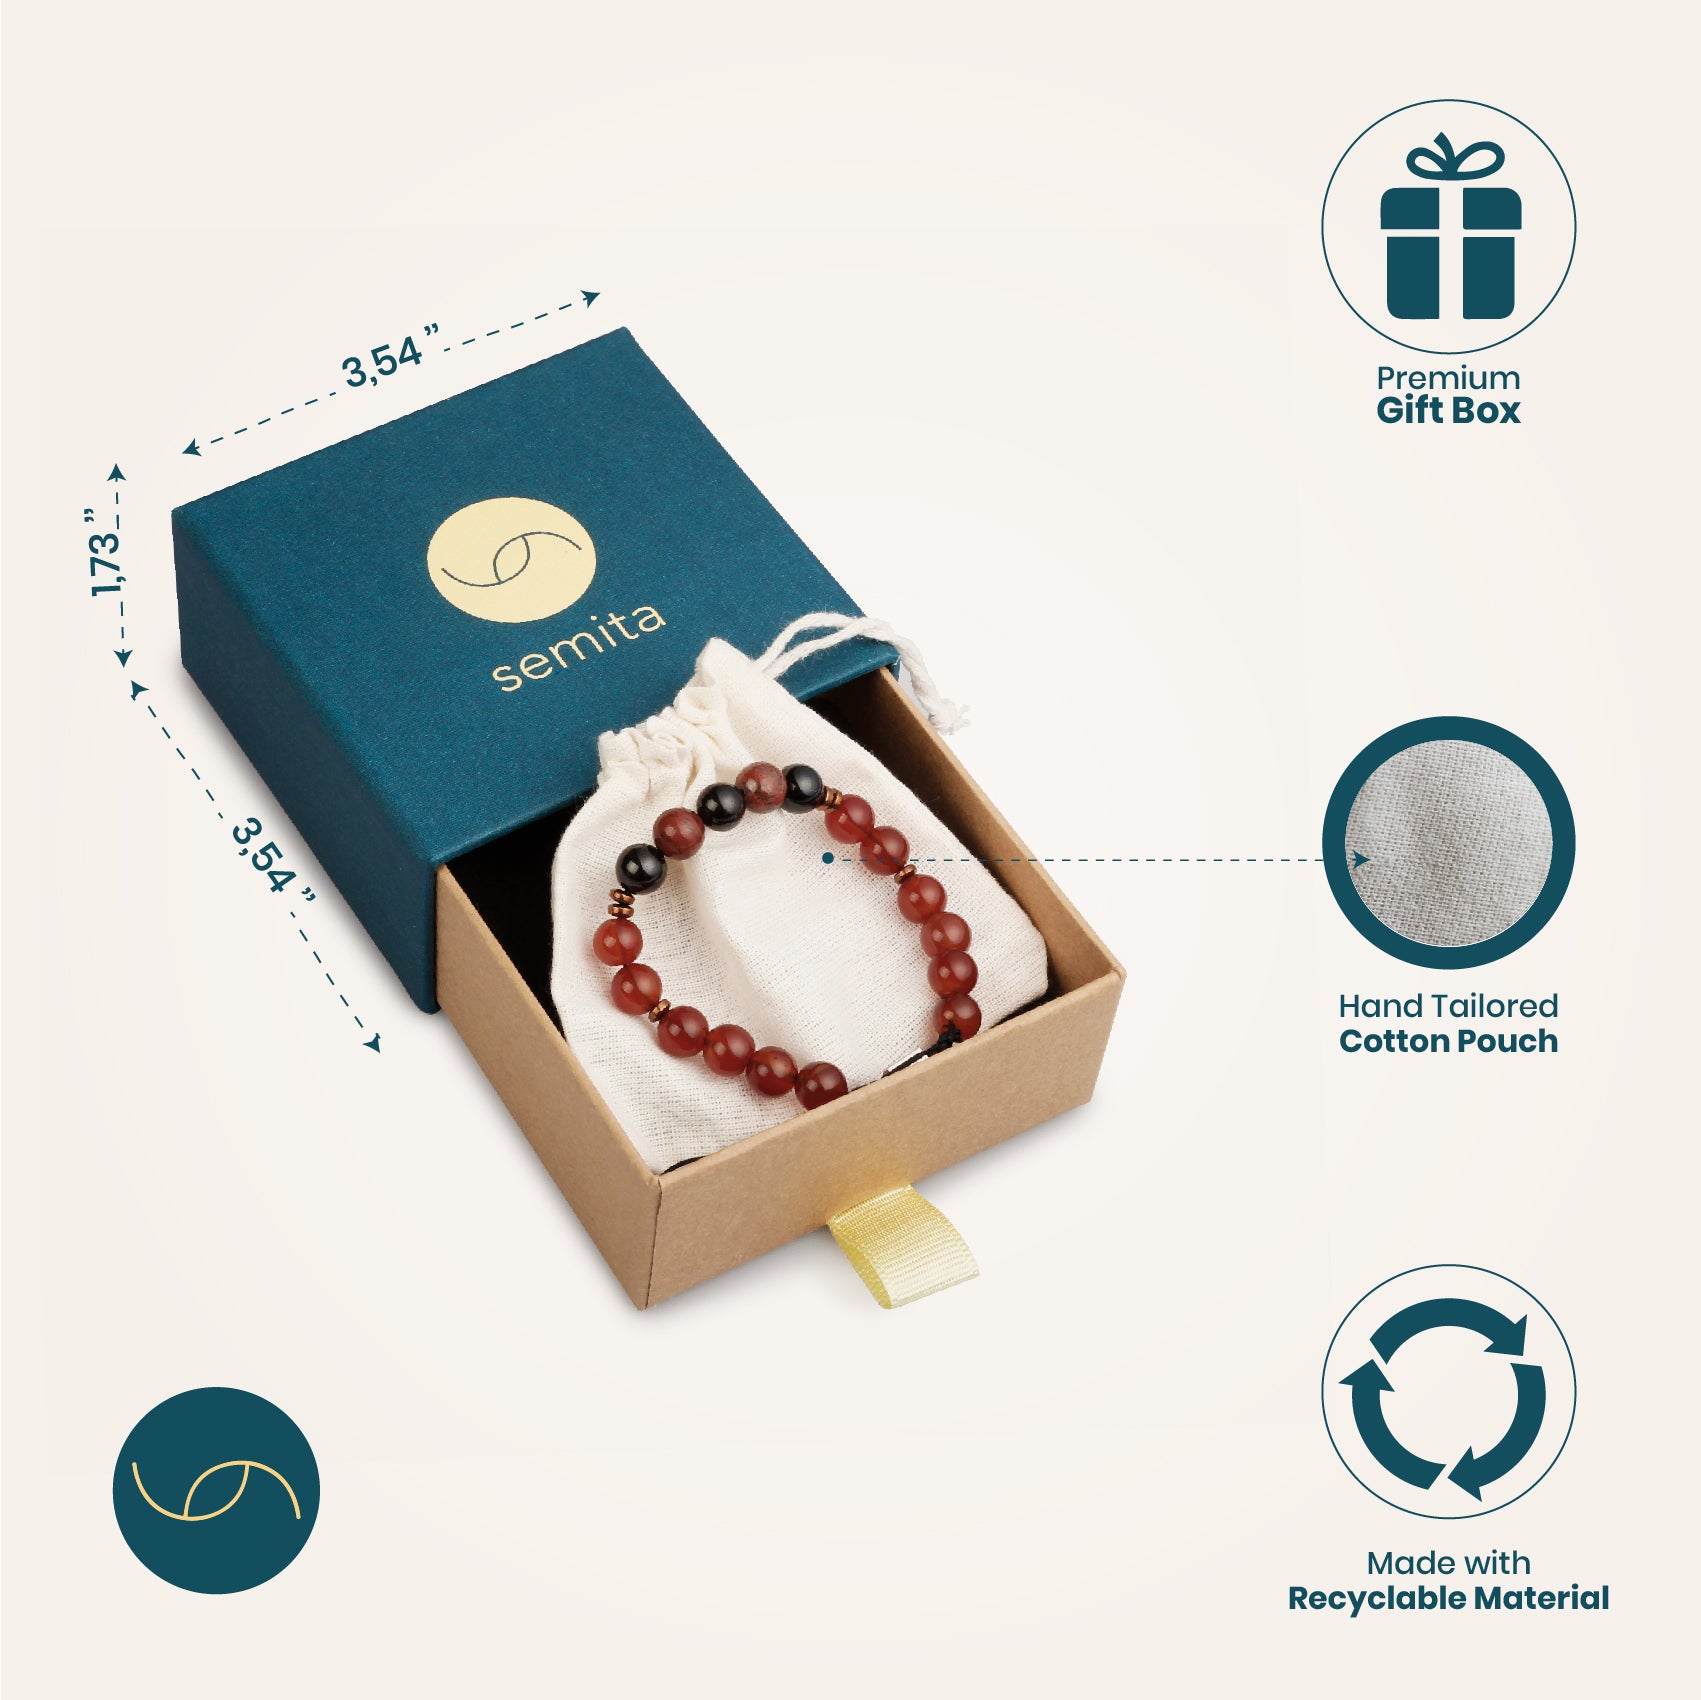 Vitality bracelet in premium gift box